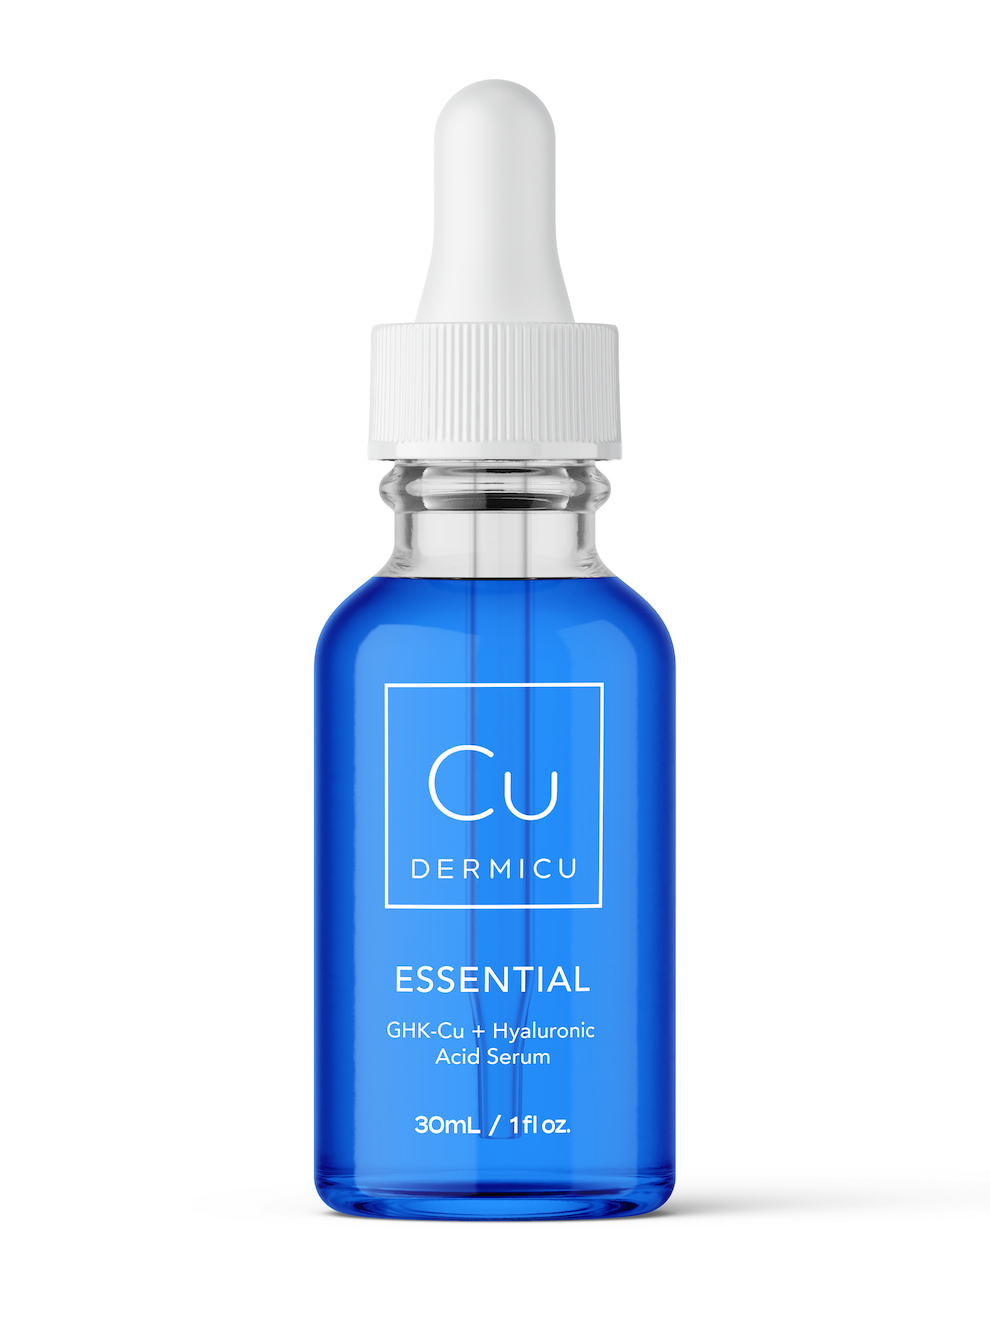 Cu Dermicu - ESSENTIAL GHK-Cu Serum infused with GHK-Cu for skin cell regeneration. (Brand Name: Custom Item)